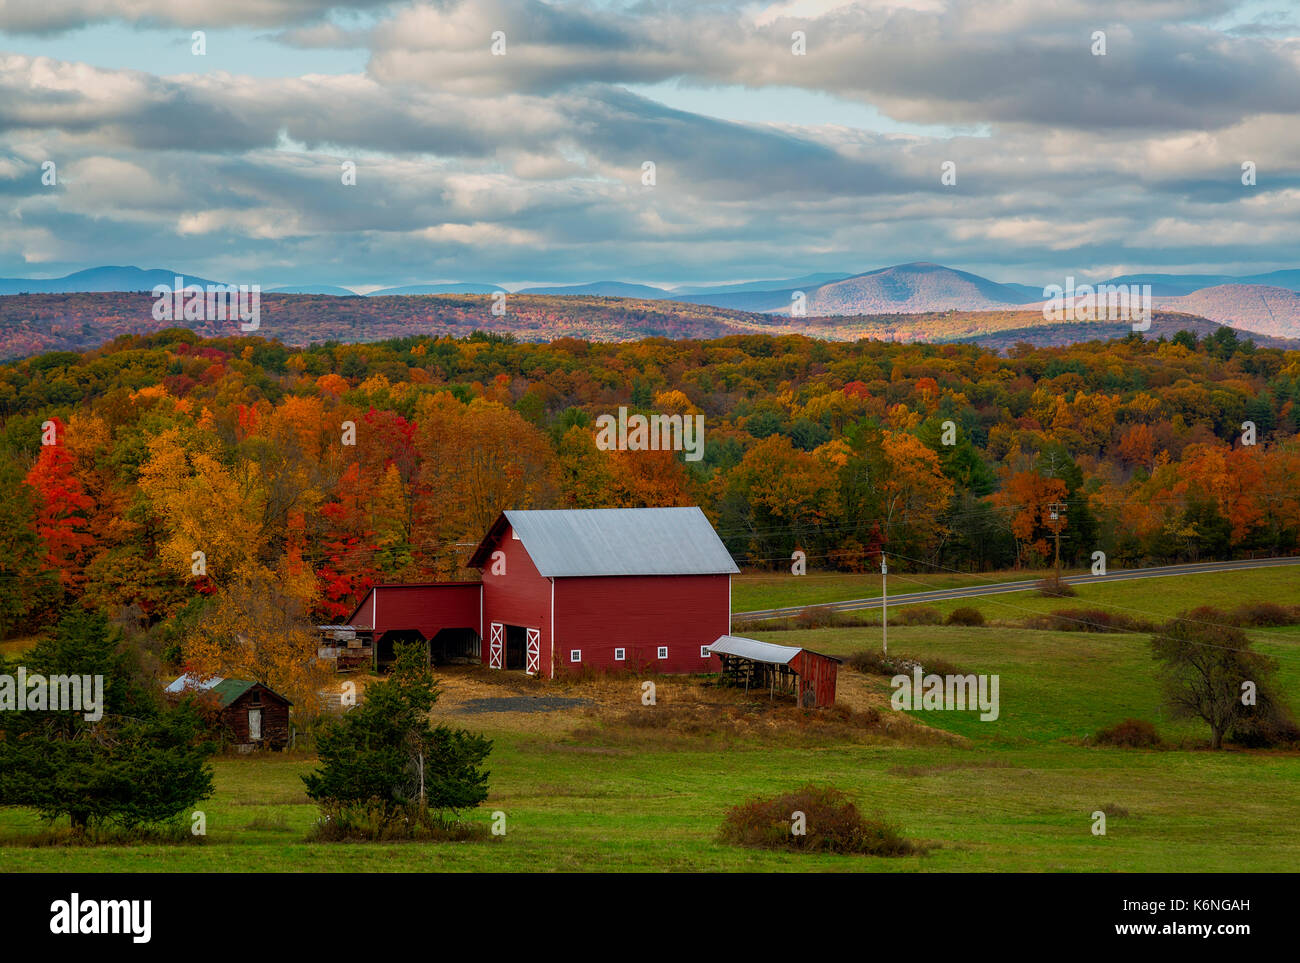 Hudson Valley NY fallen Farben - Rote Scheune und Bauernhaus mit den warmen und hellen Farben von Peak Herbst Laub als Hintergrund. Die Shawangunk Ridge, auch bekannt als die Shawangunk Mountains oder den Gunks, ist ein Grat Grundgestein in Ulster County, Sullivan County und Orange County im Bundesstaat New York und ist auch im Hintergrund zu sehen. Stockfoto